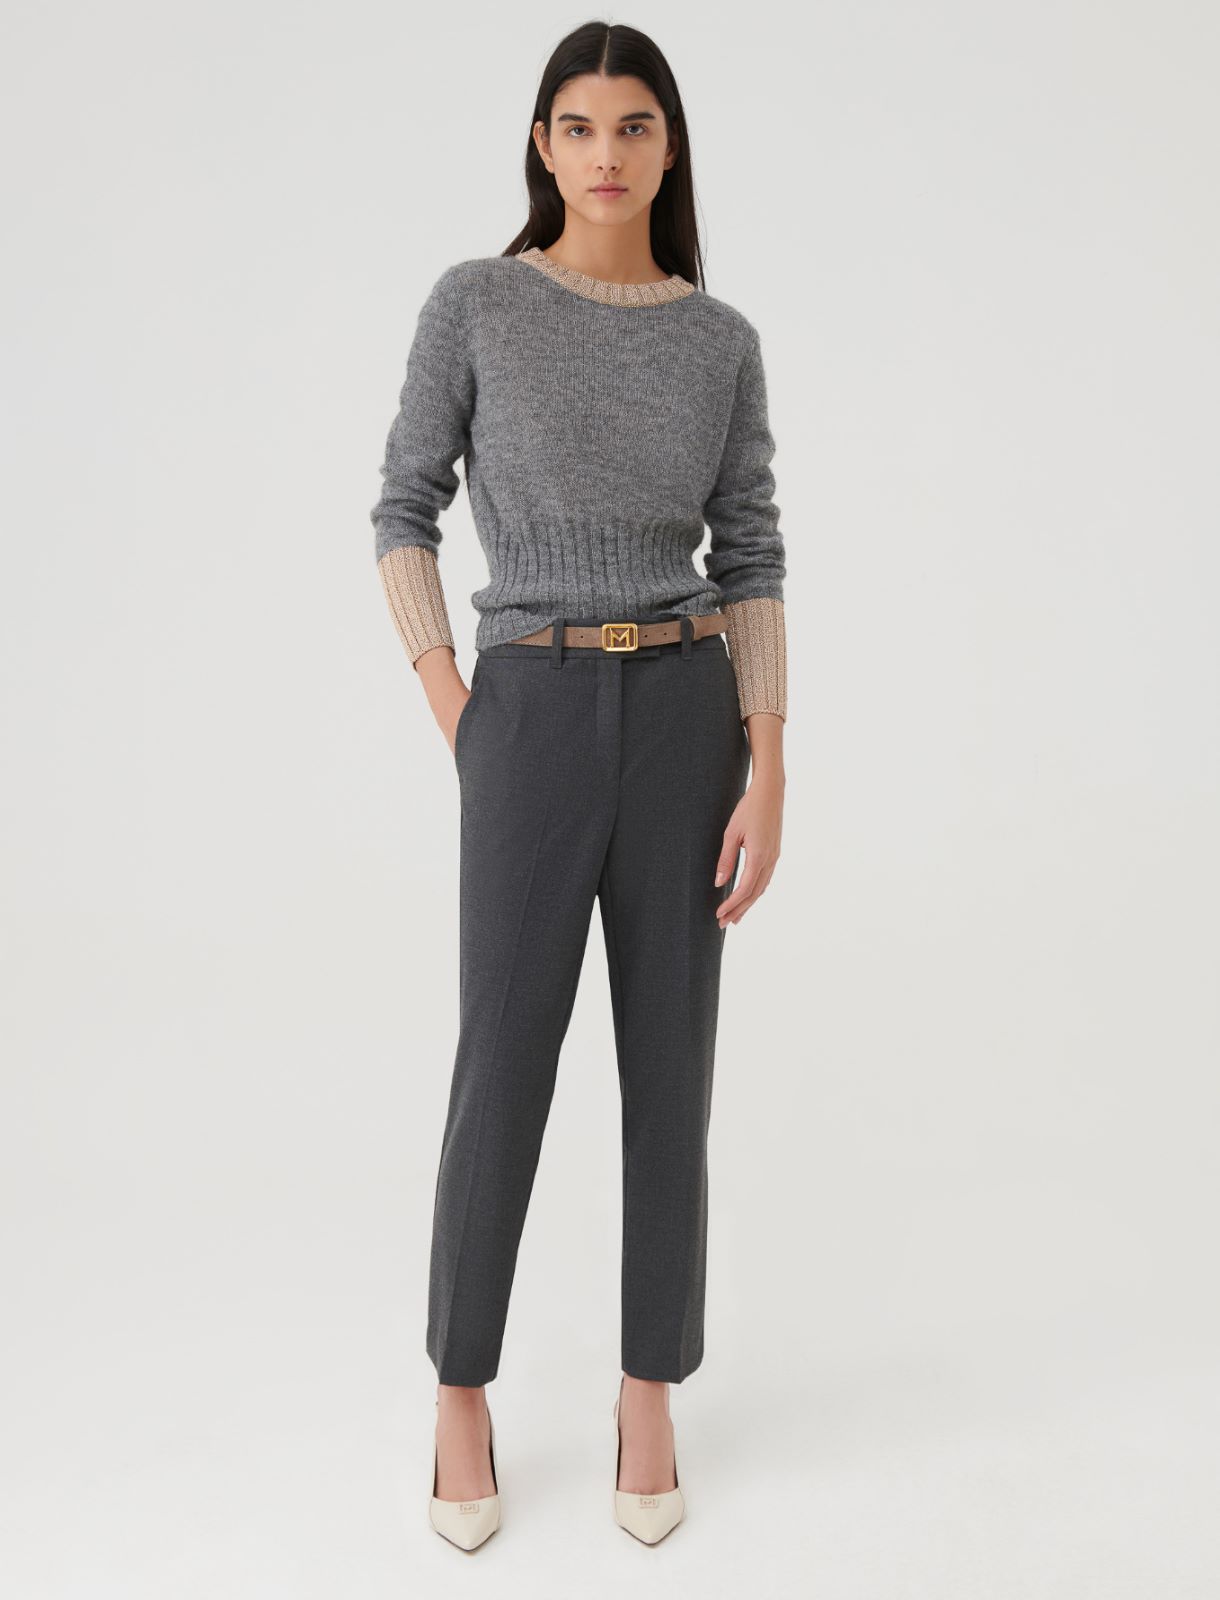 Lurex sweater, melange grey | Marella